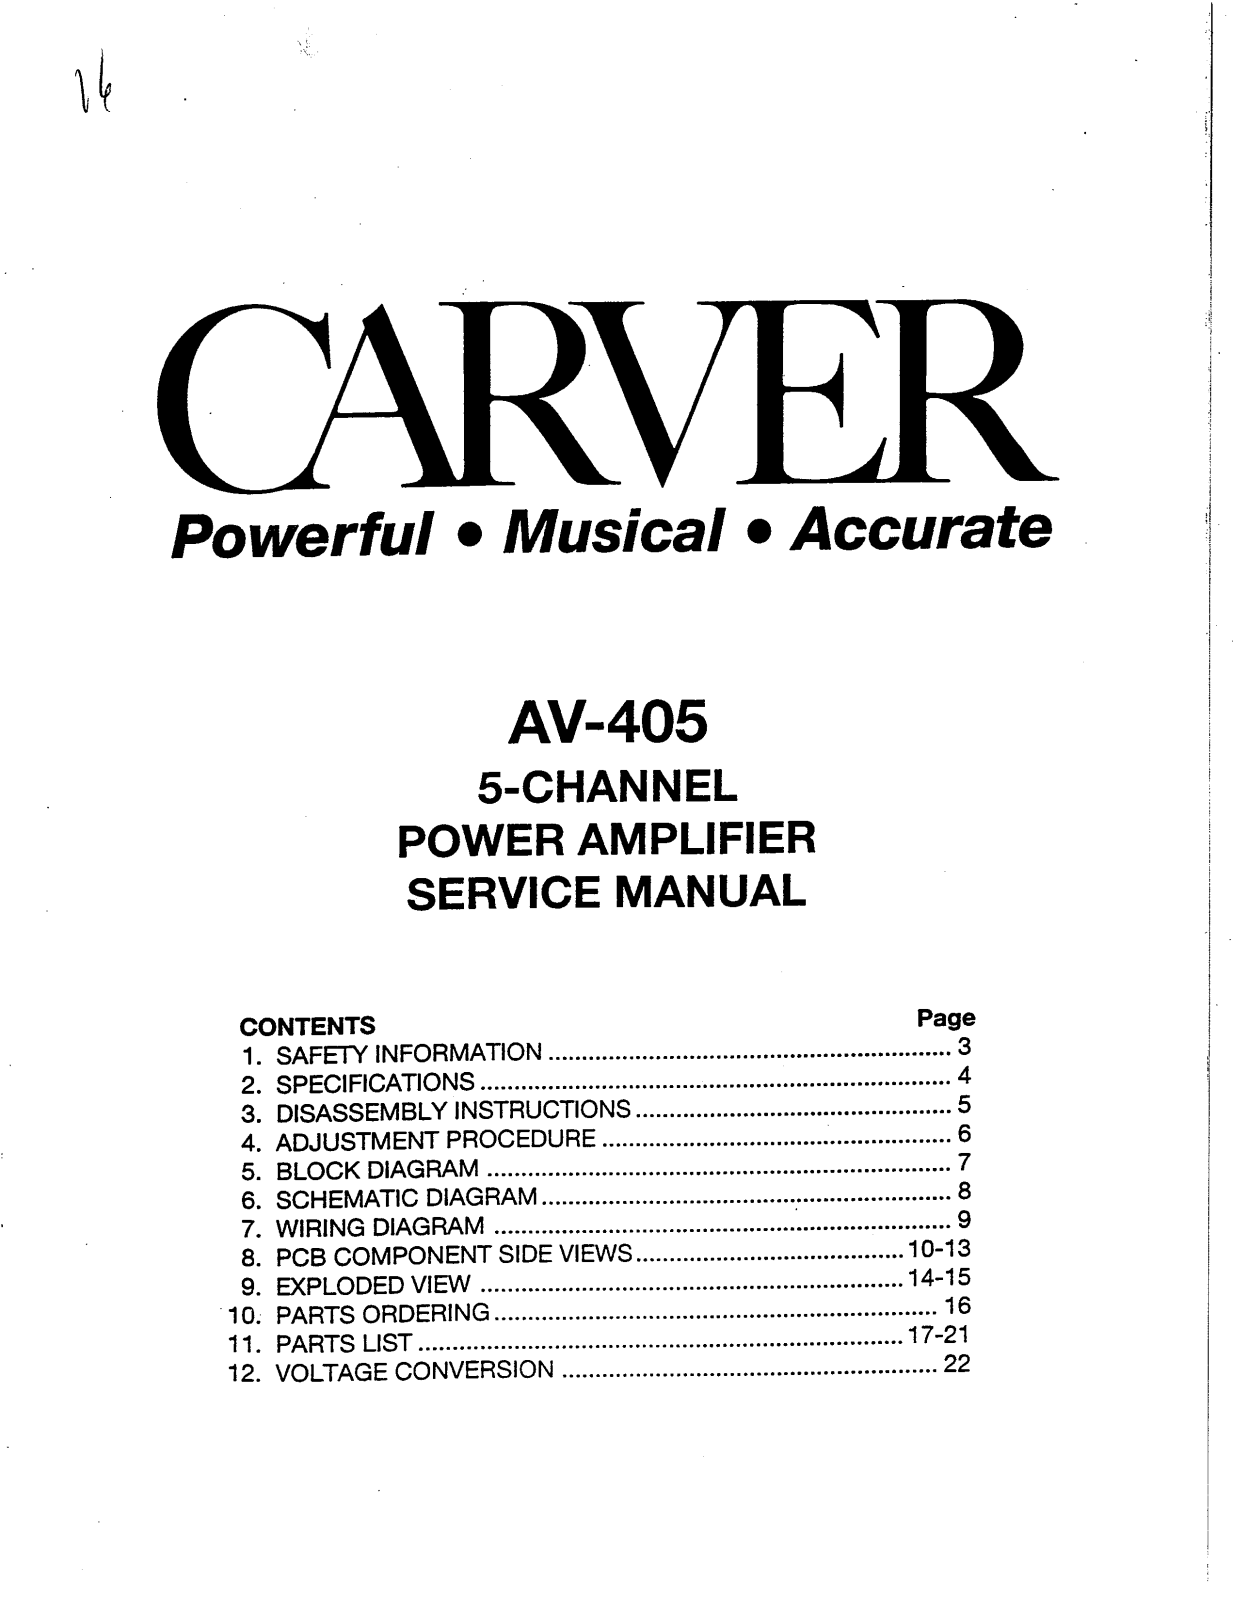 Carver AV-405 Service manual